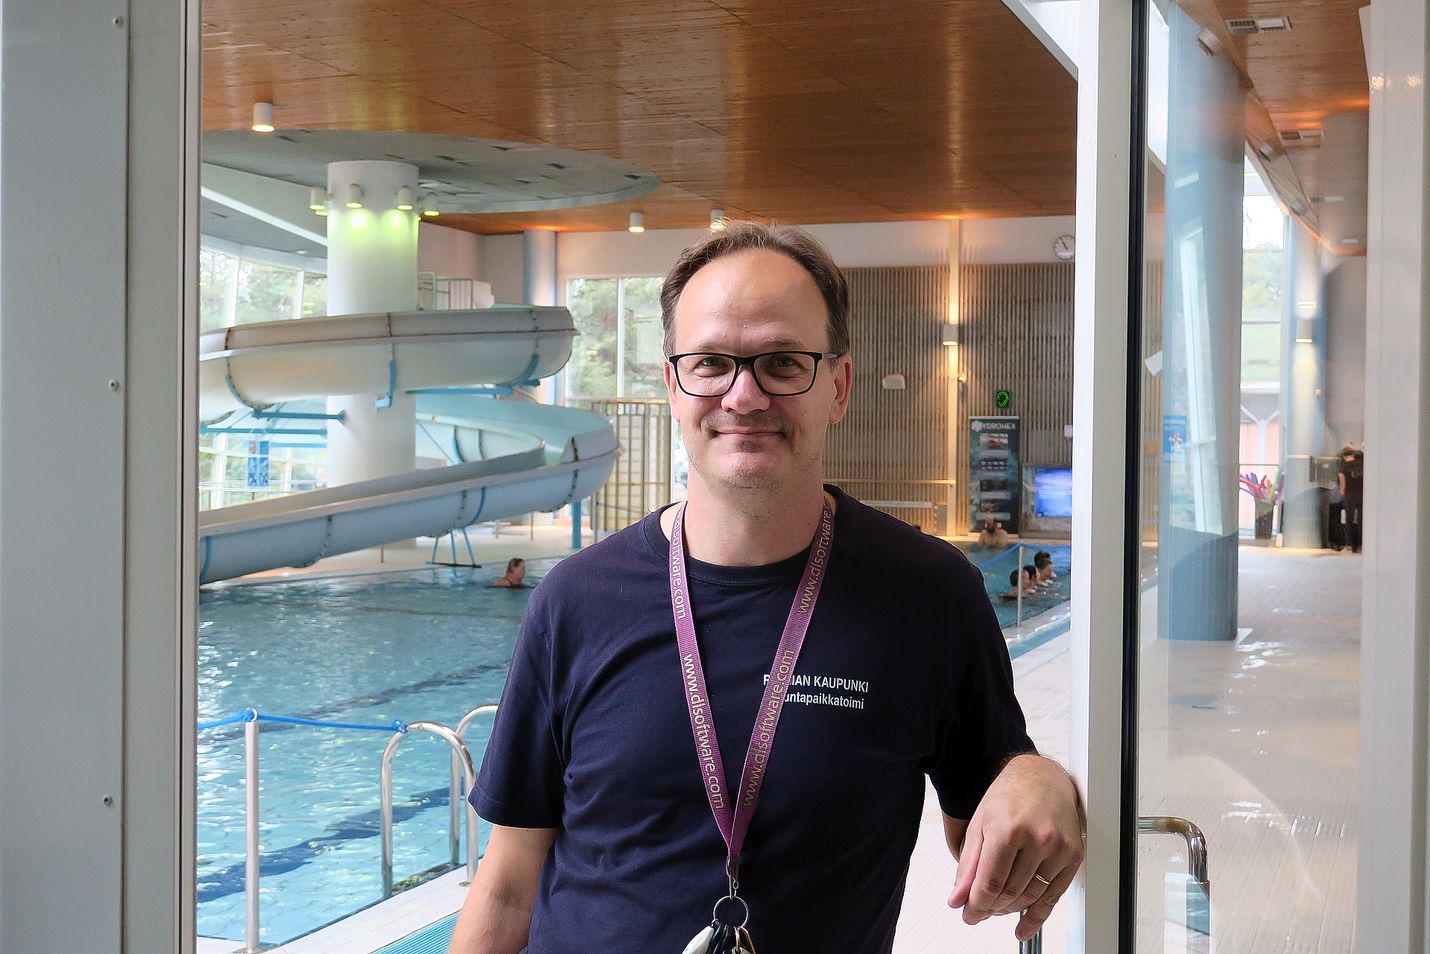 "Meillä on ikuinen kesä", naurahtaa uimahallin esimies Joni Penttilä – lämmönsietokyky on hyvä ominaisuus uimavalvojalle. Uimavalvojan työssä on paljon vastuuta. "Koko ajan pitää olla skarppina, mitä tapahtuu", Penttilä toteaa.